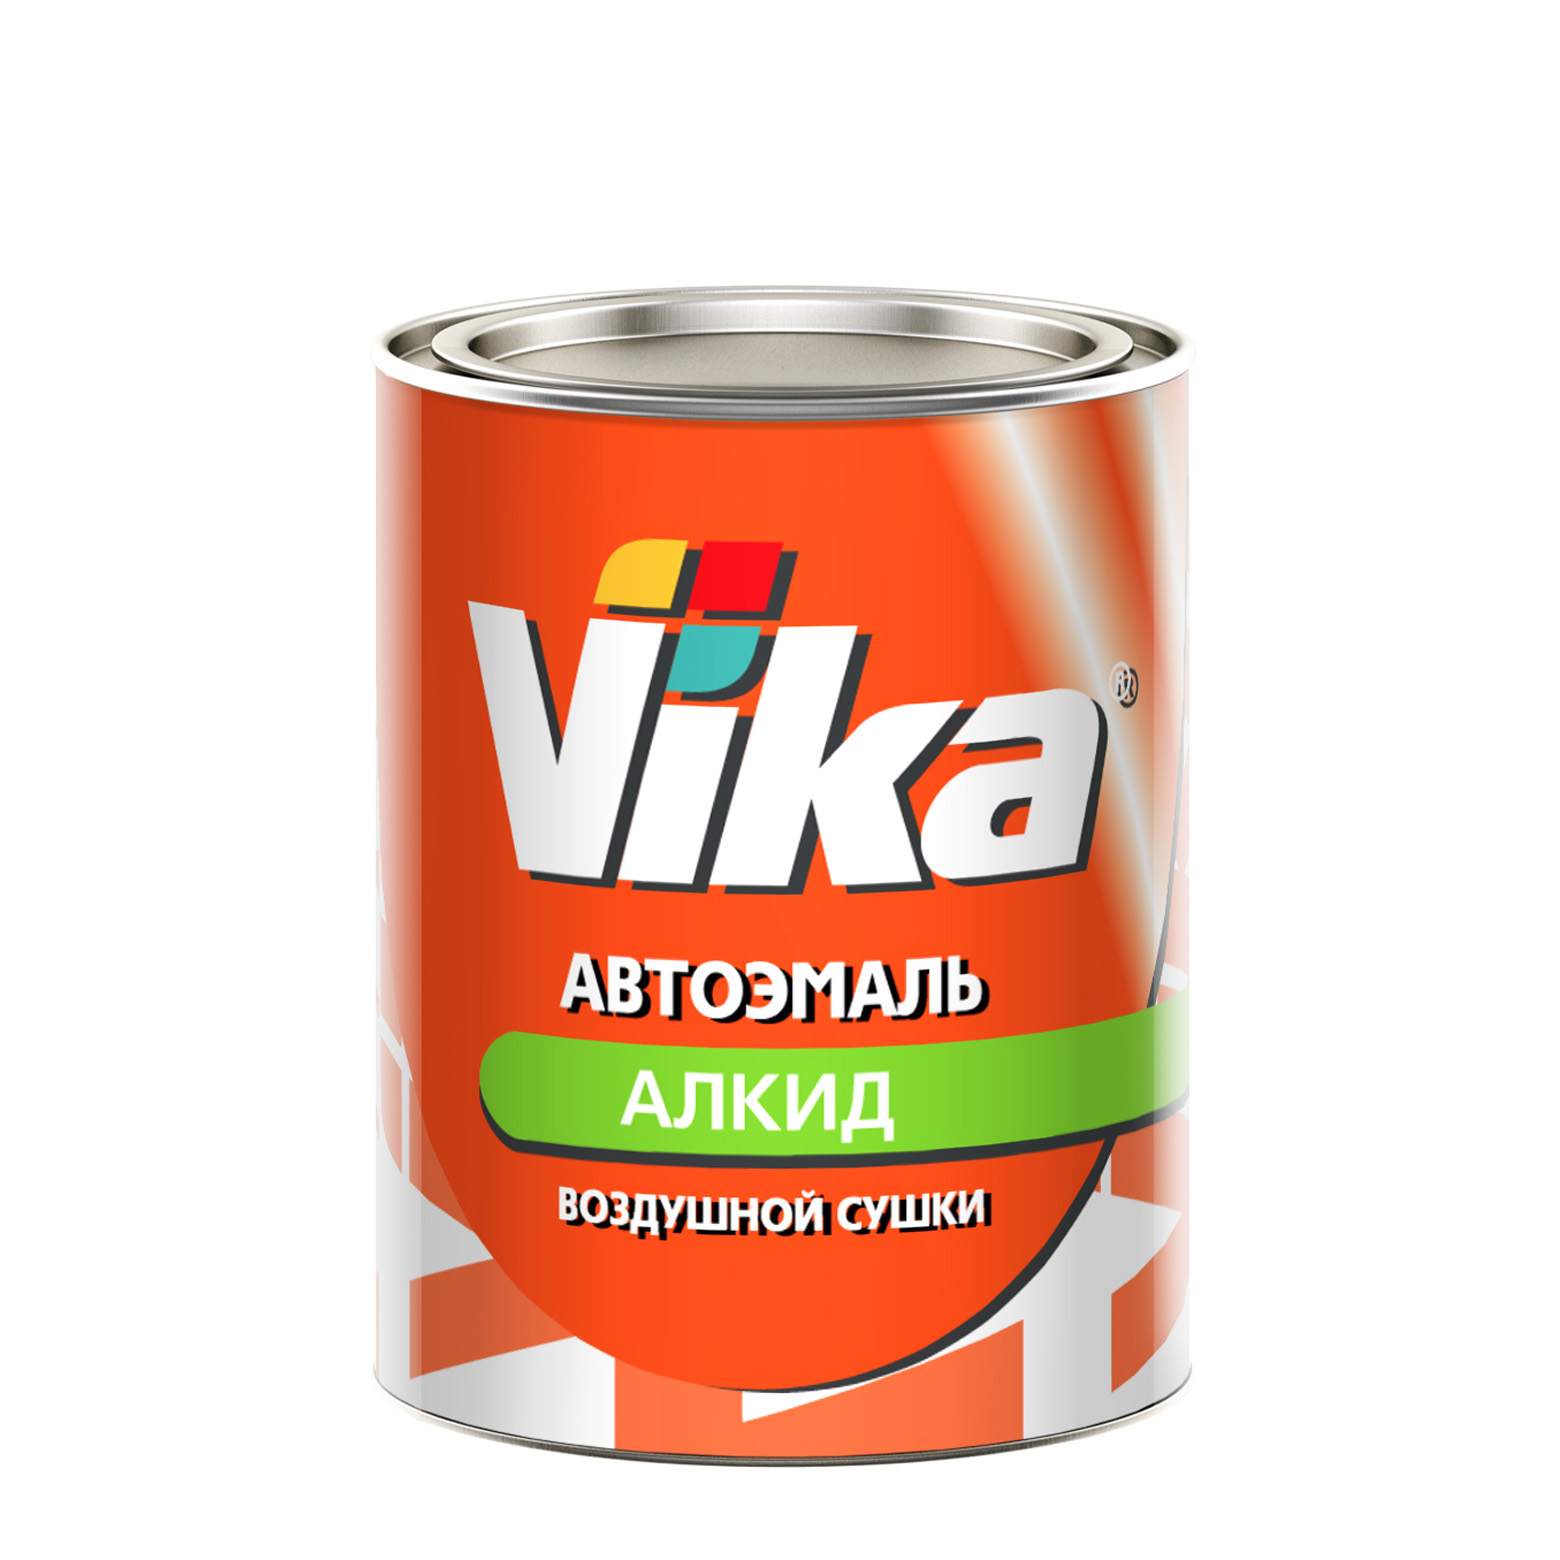 Фото 1 - Автоэмаль Vika-60, цвет 202 Белая алкидная глянцевая естественной сушки - 0,8 кг.